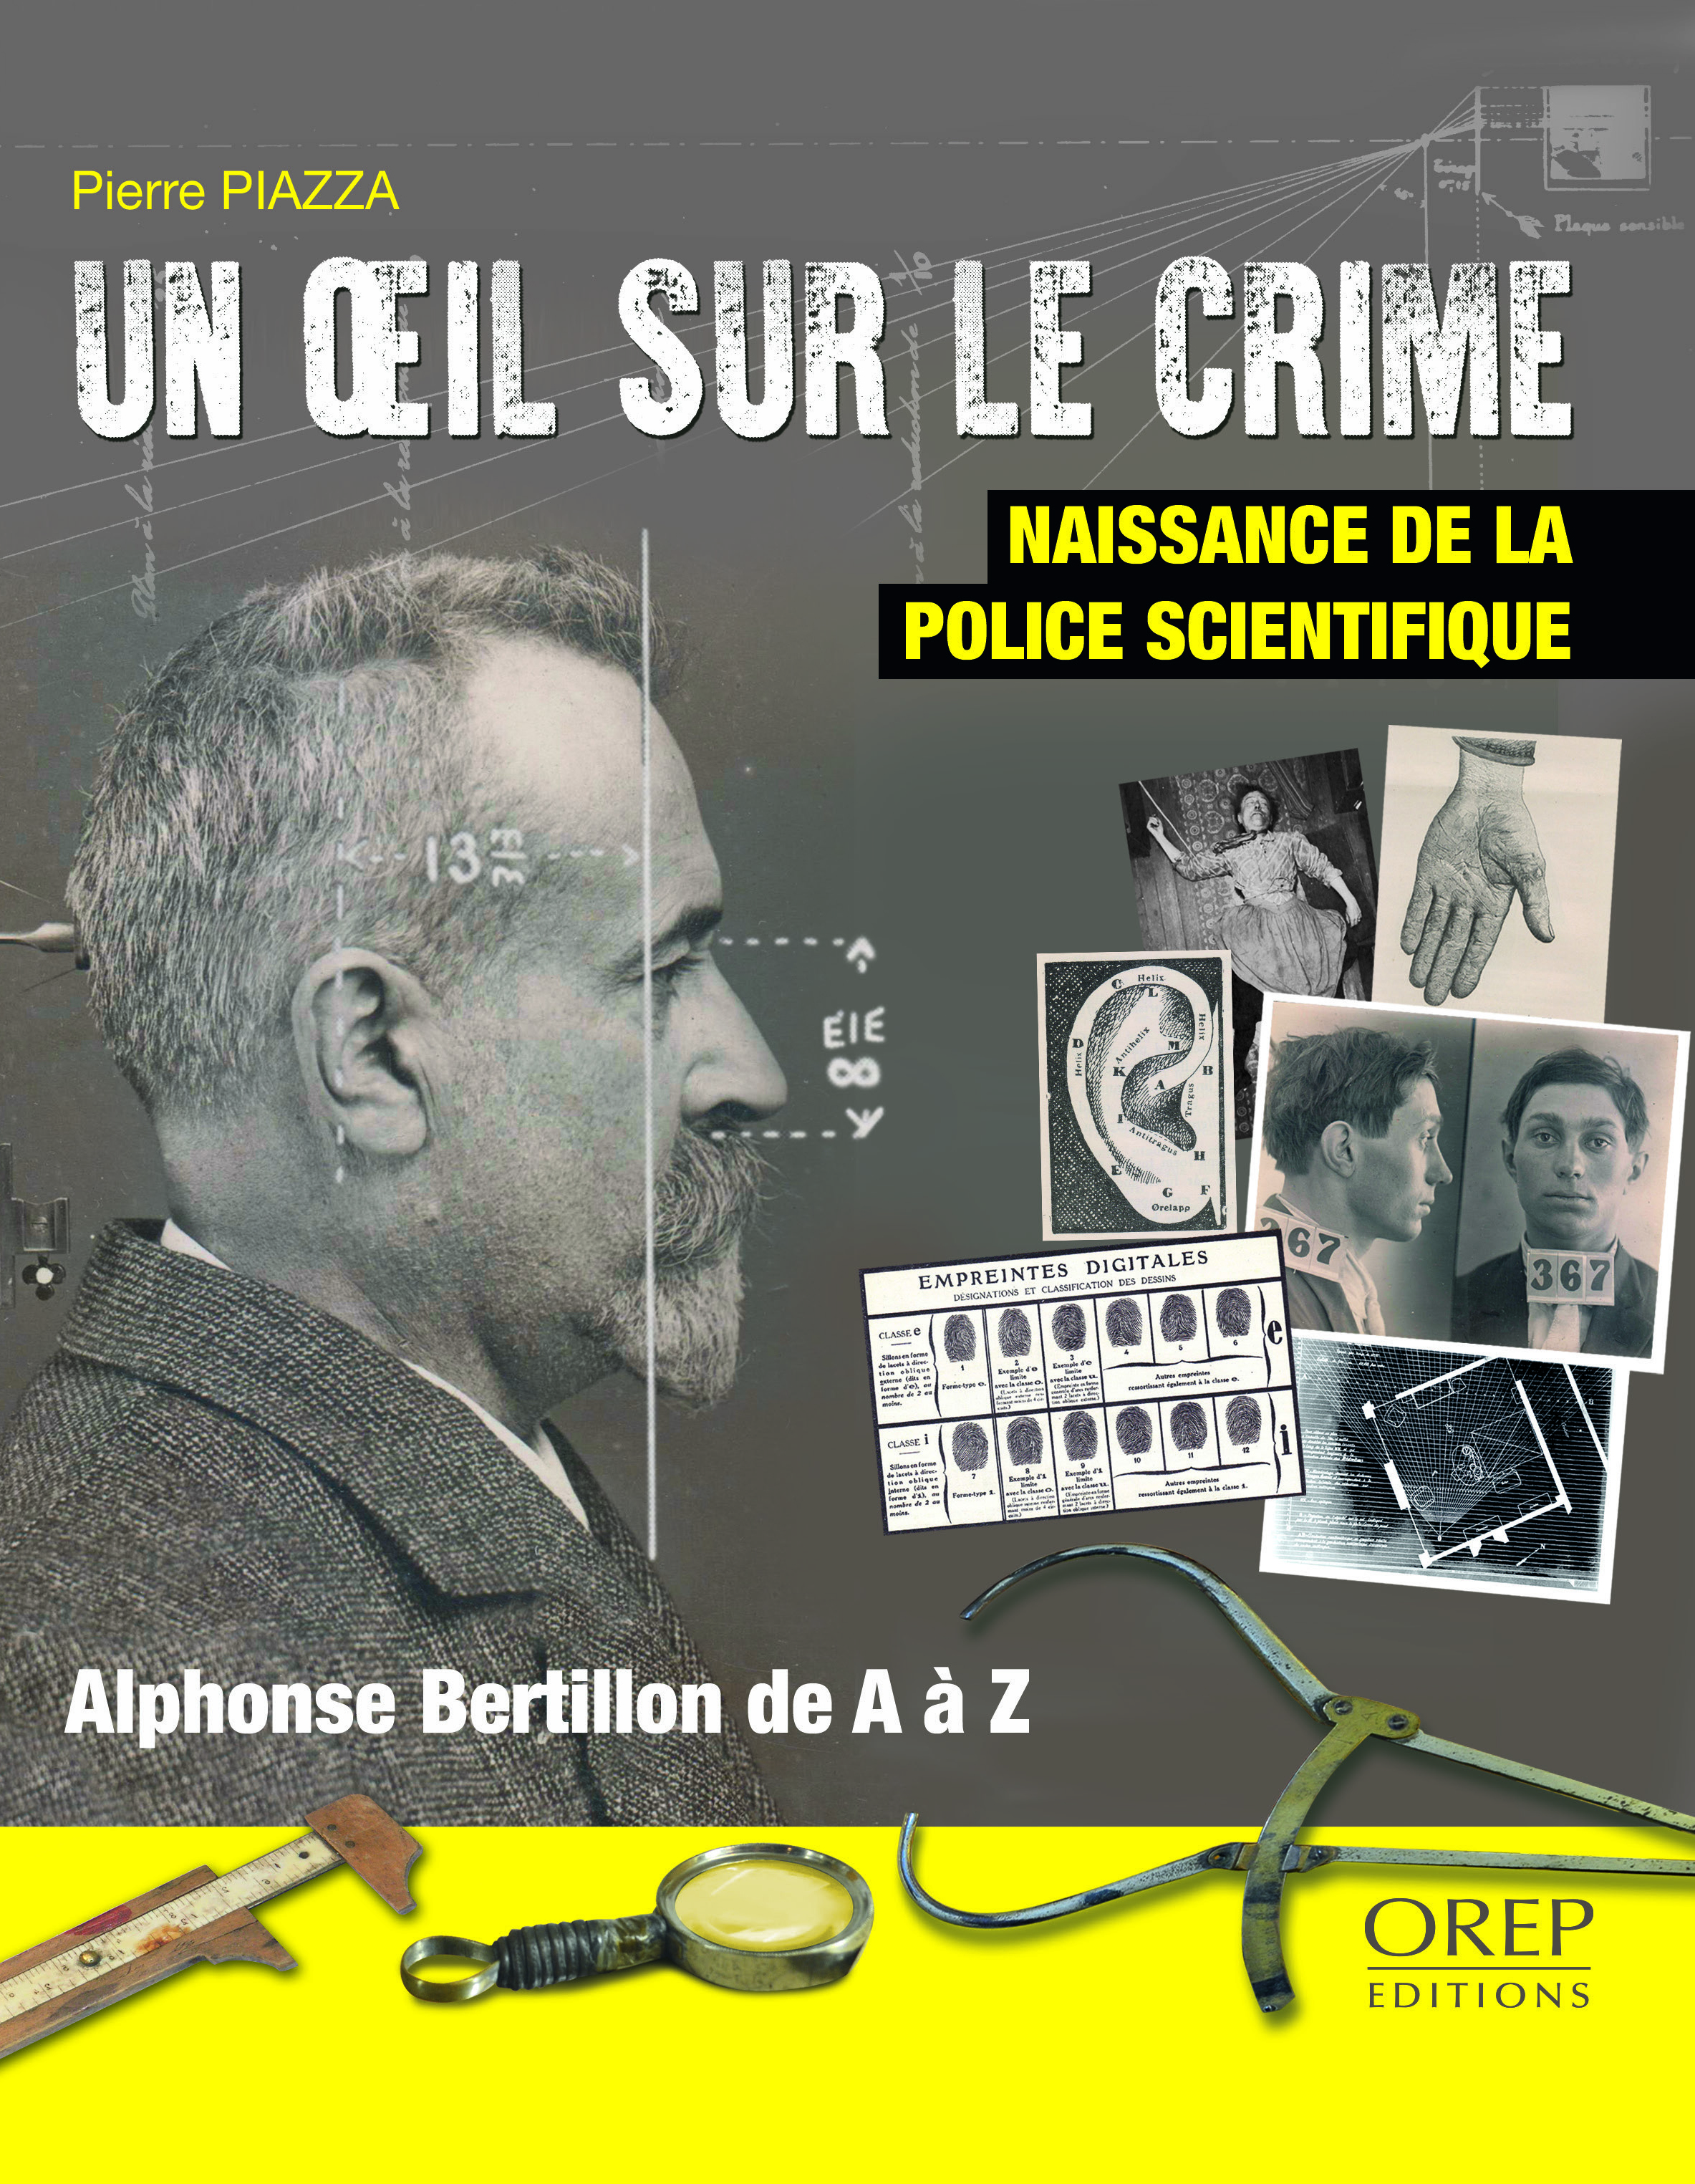 Pierre Piazza, Un oeil sur le crime © OREP Éditions